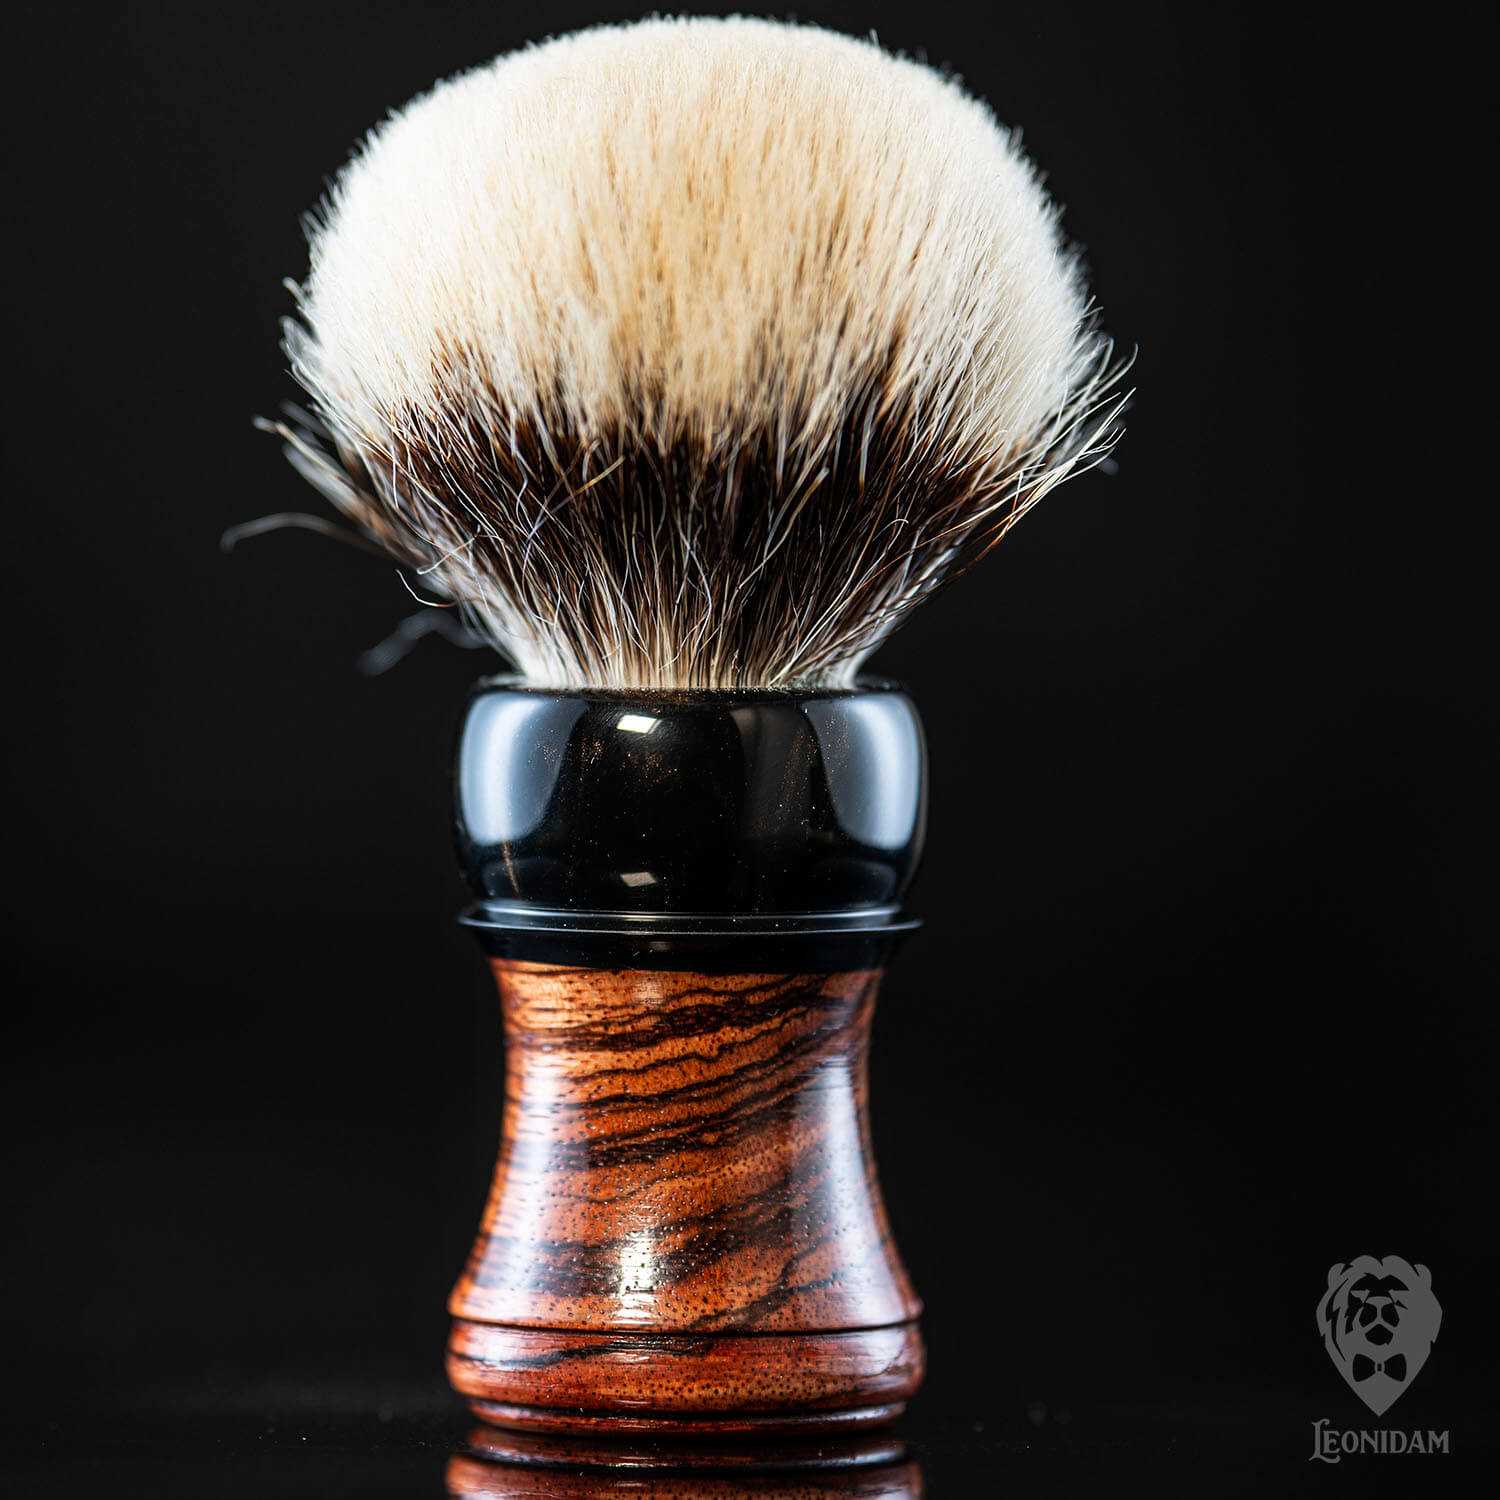 Wooden Shaving Brush "Venator" in stabilized zebrano and dark resin